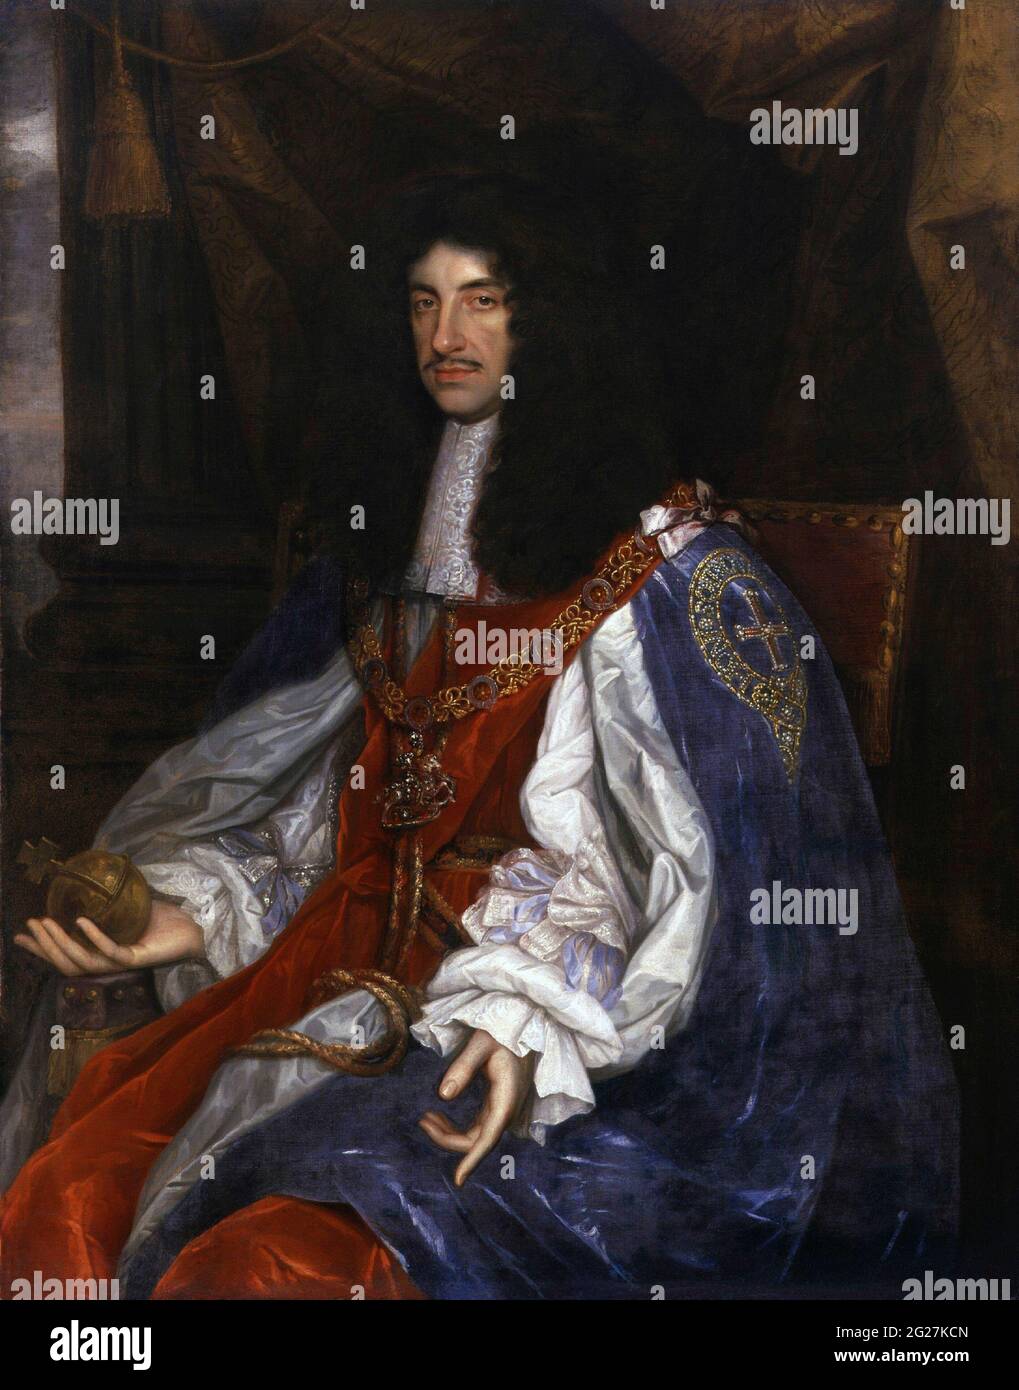 Pintura del rey Carlos II vestida con trajes de guirnalda cuando era el monarca gobernante de Inglaterra, Escocia e Irlanda. Foto de stock